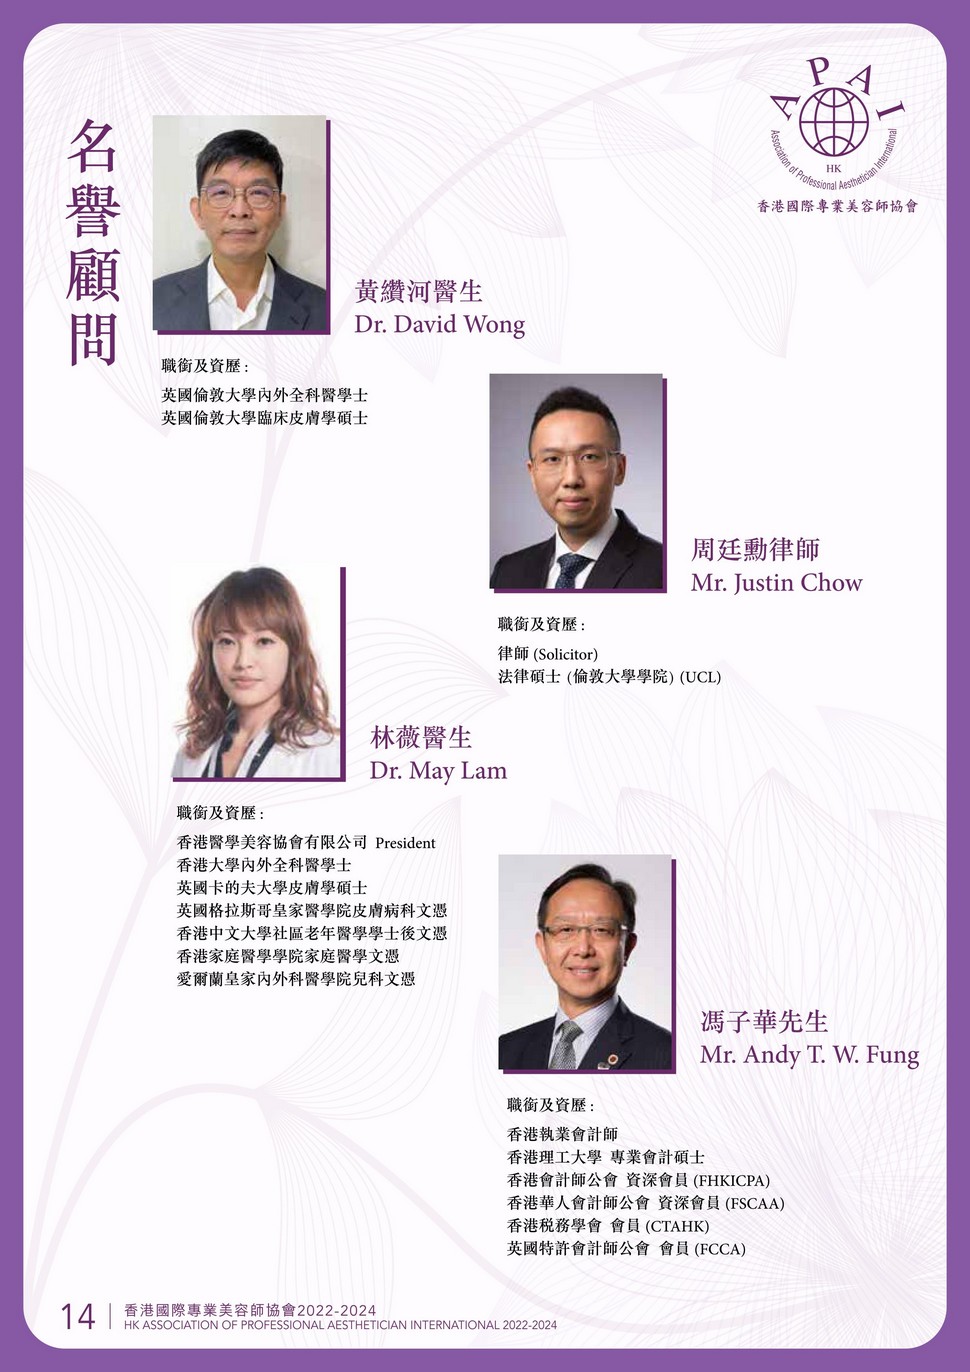 http://apai.org.hk/files/20222024-17%E5%90%8D%E8%AD%BD%E9%A1%A7%E5%95%8F.jpg